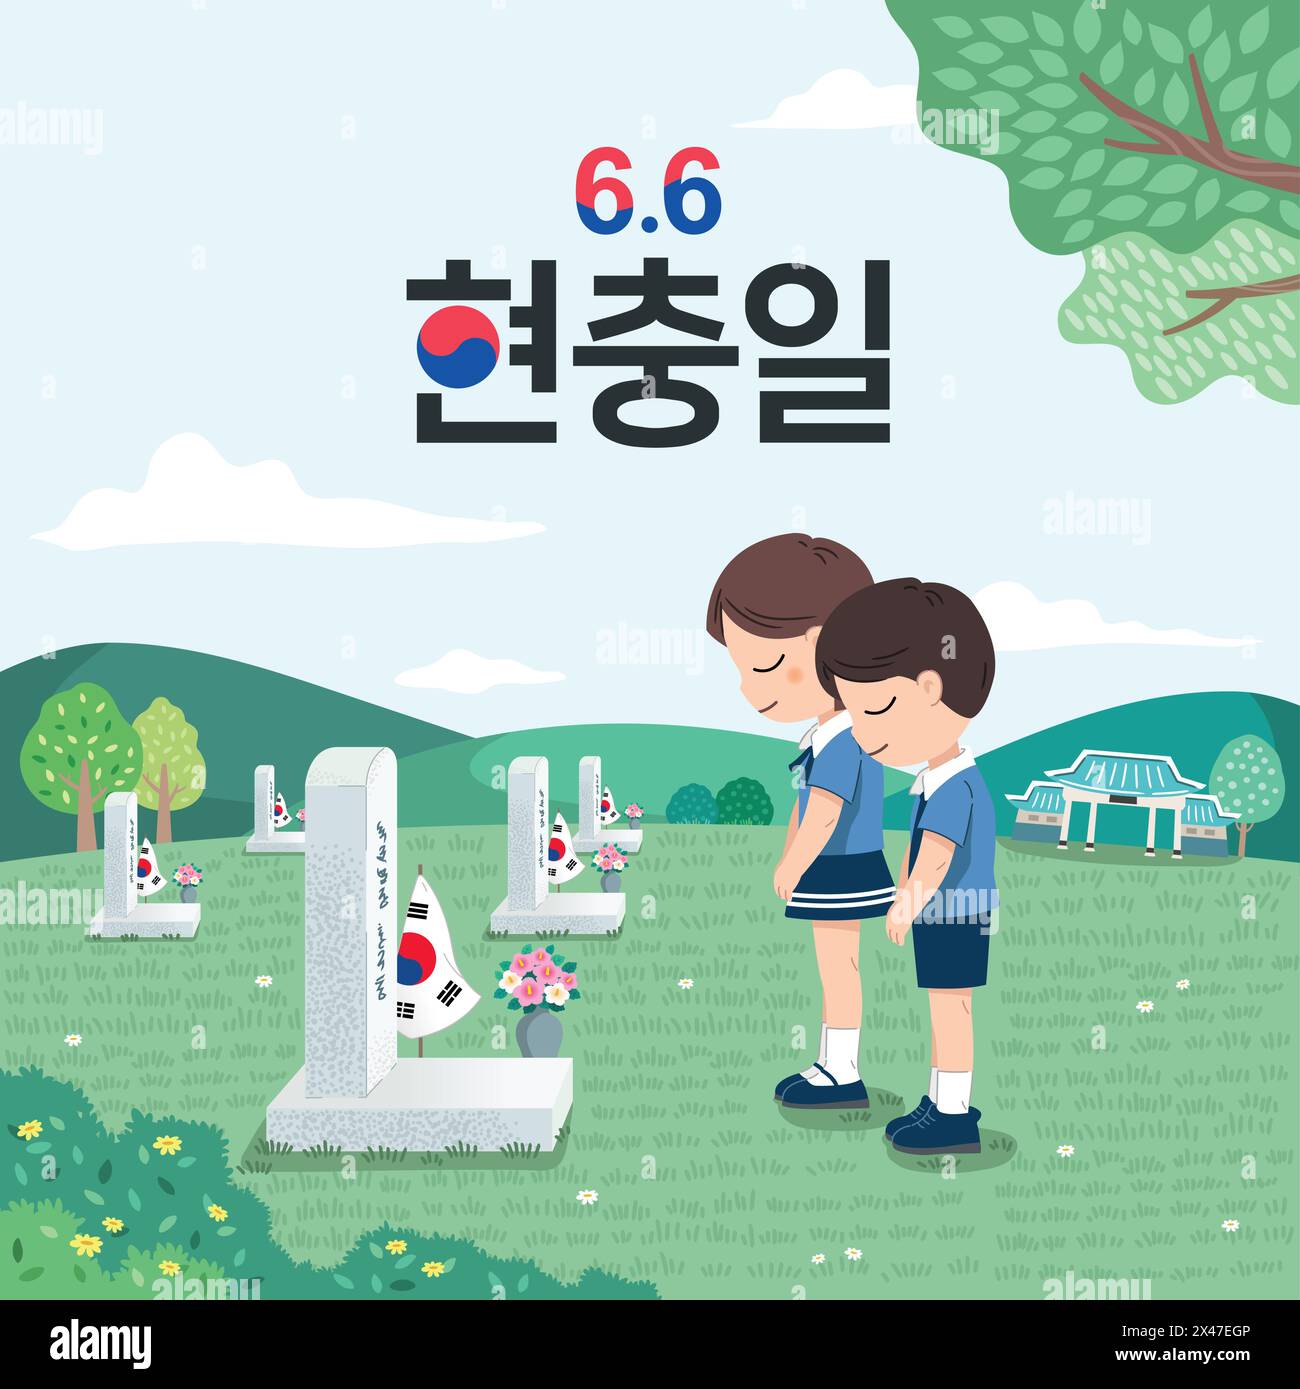 Koreanischer Gedenktag. Kinder ehren Helden, die ihr Leben für ihr Land opferten. Koreanischer Gedenktag, koreanische Übersetzung. Stock Vektor